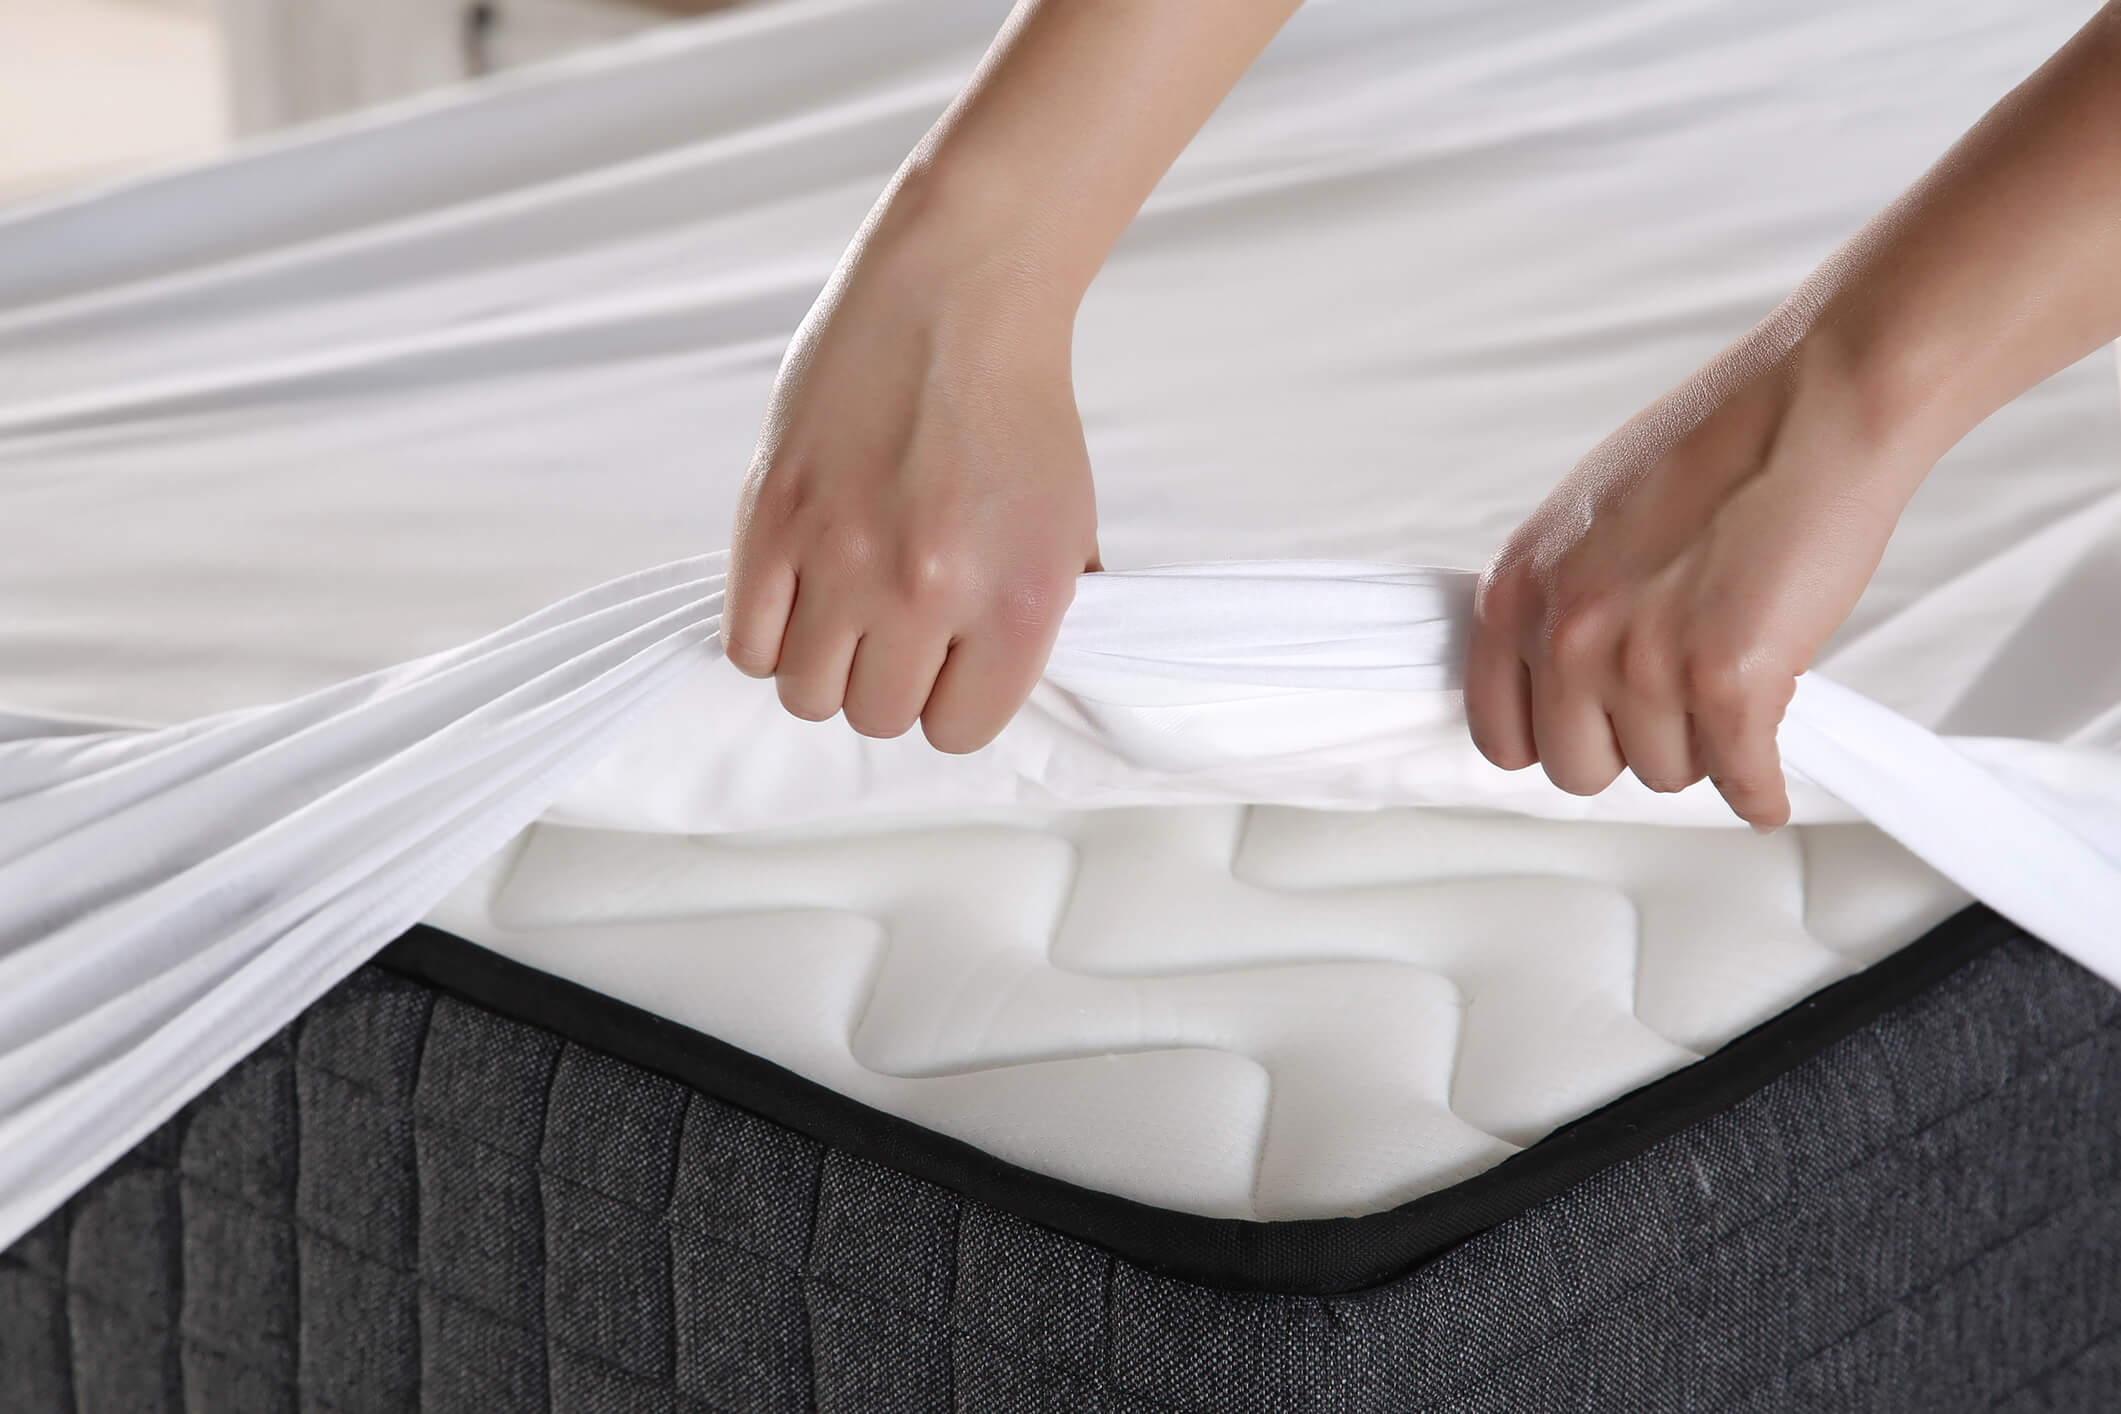 cleaning air mattress with bleach